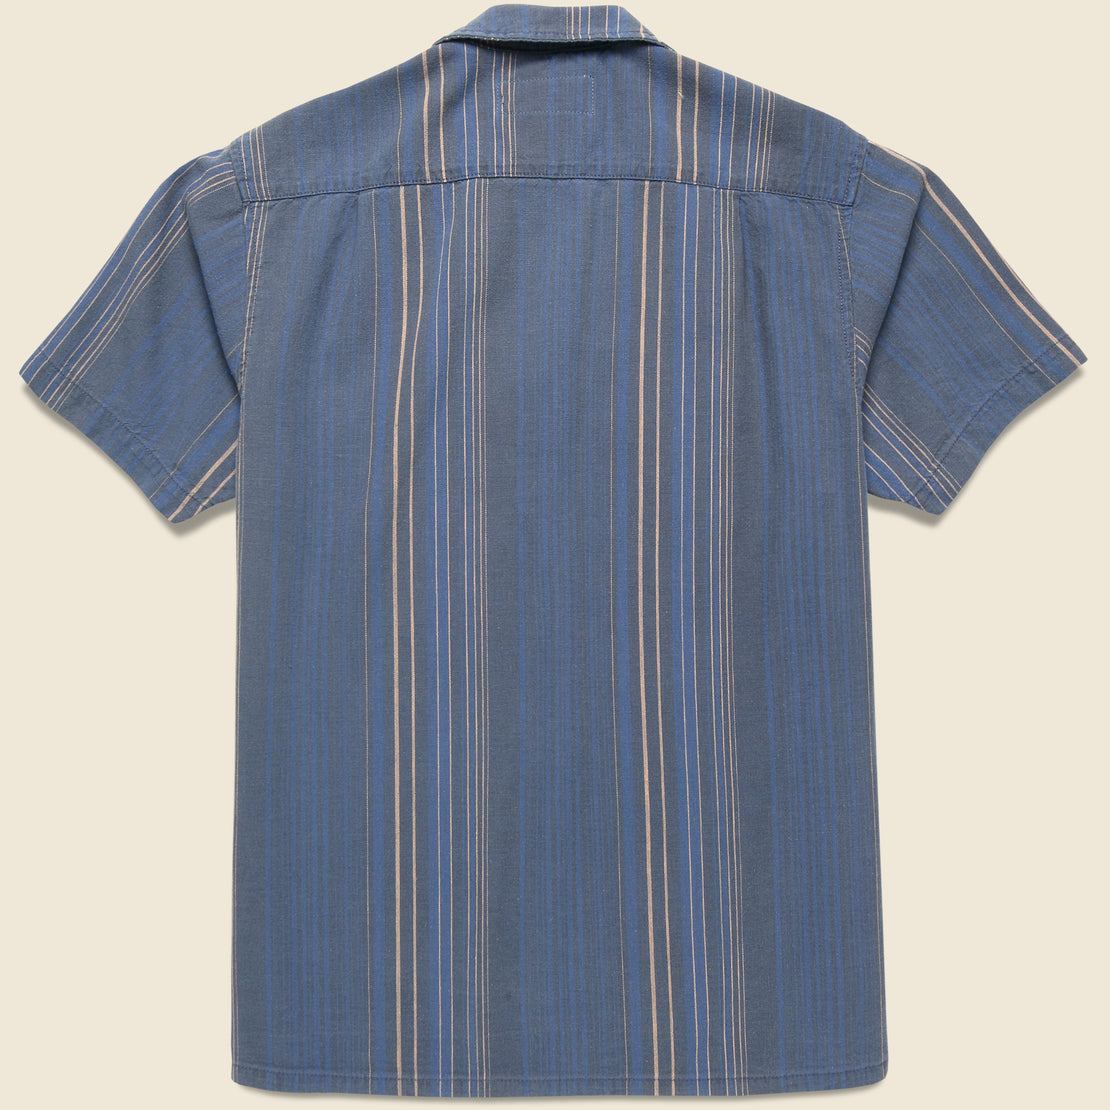 Serra Camp Shirt - Indigo Stripe